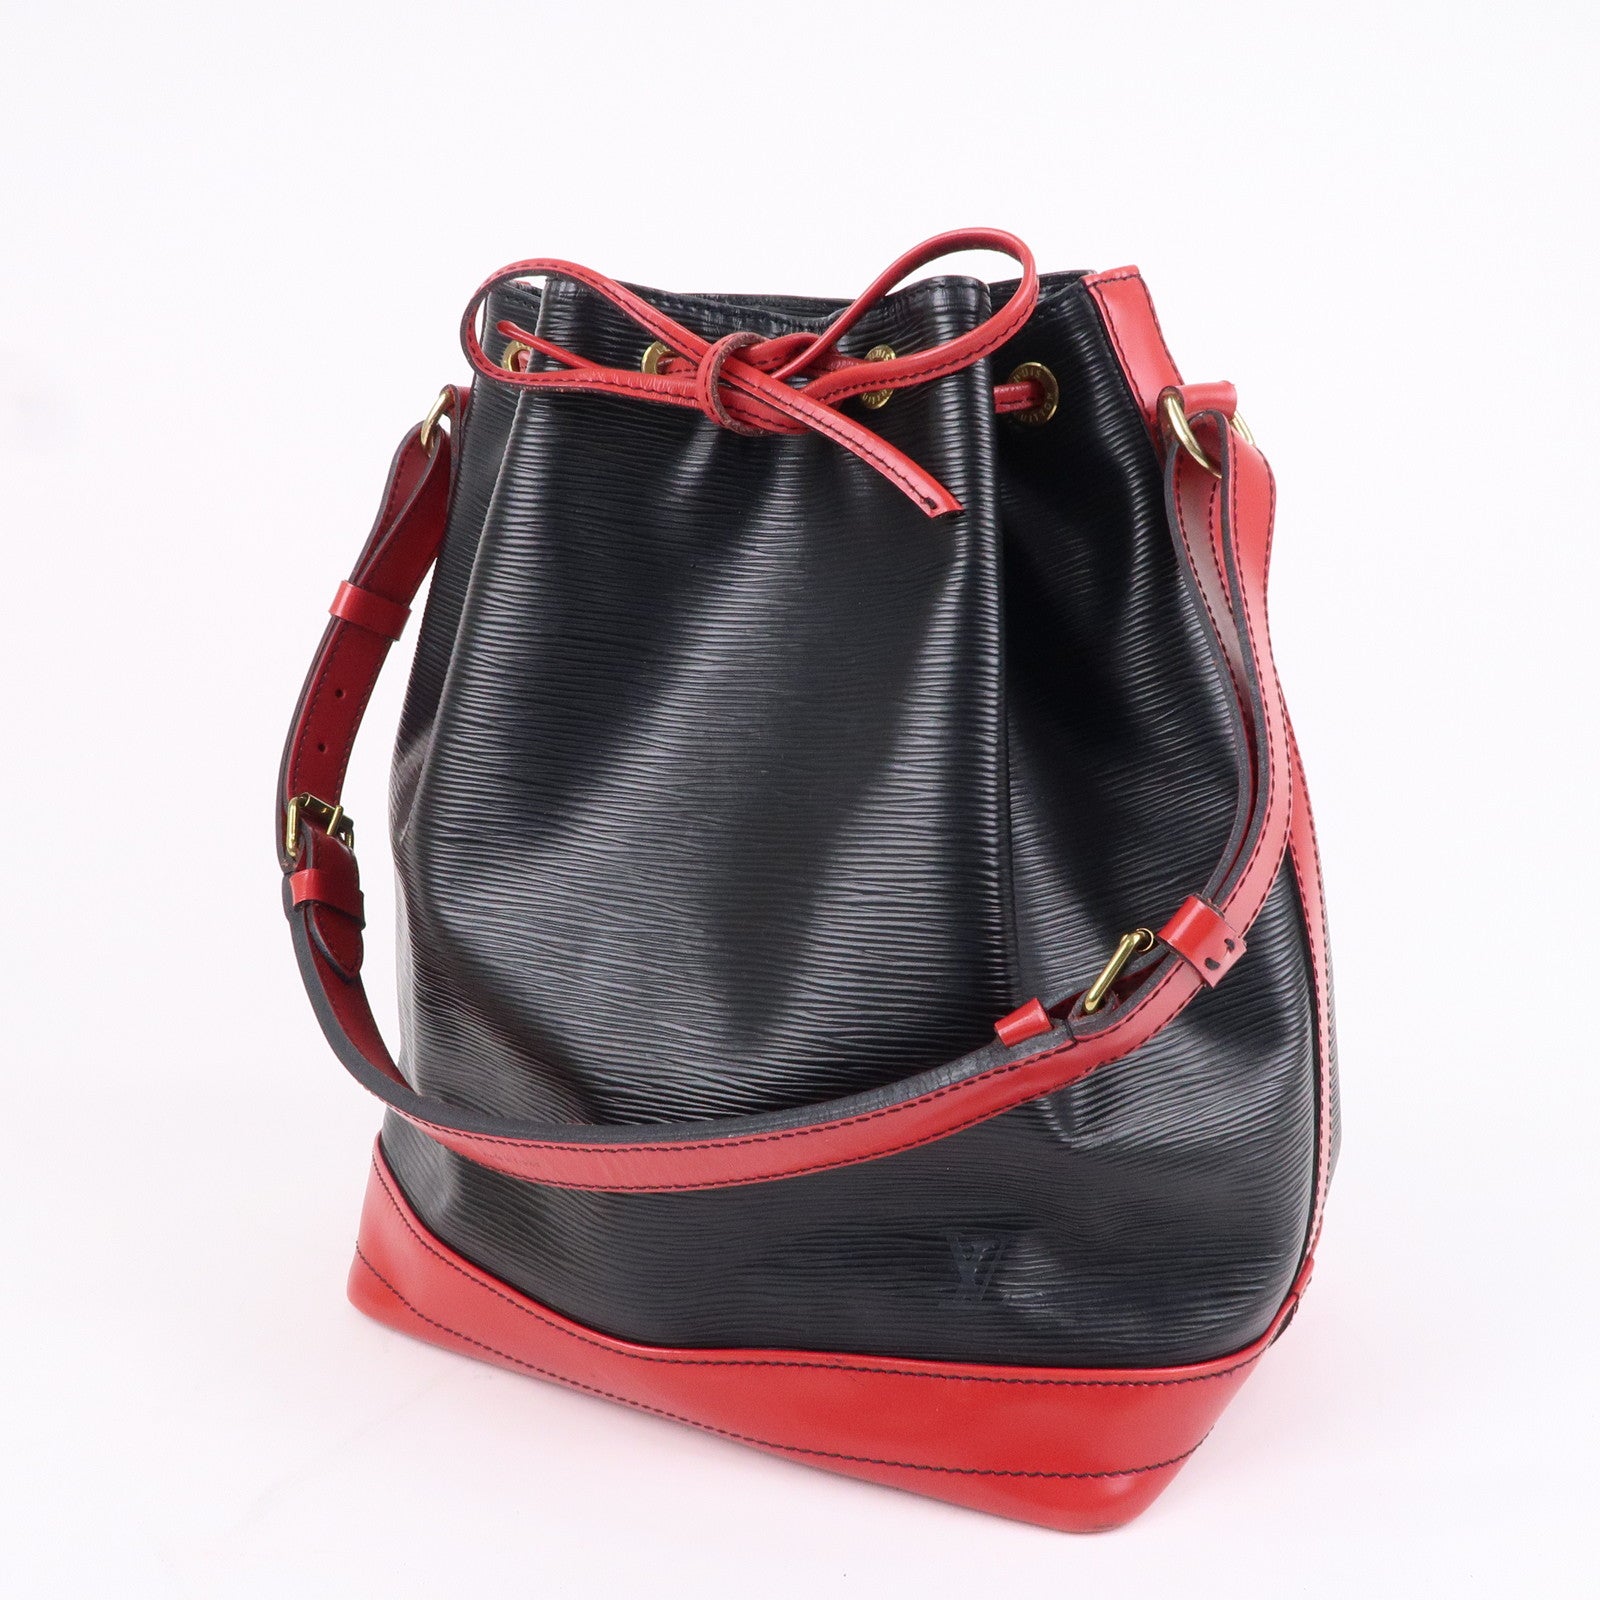 Buy [Bag] LOUIS VUITTON Louis Vuitton Epi Noe Shoulder Bag One Shoulder  Drawstring Bicolor 2 Tone Noir Castilian Red M44017 from Japan - Buy  authentic Plus exclusive items from Japan